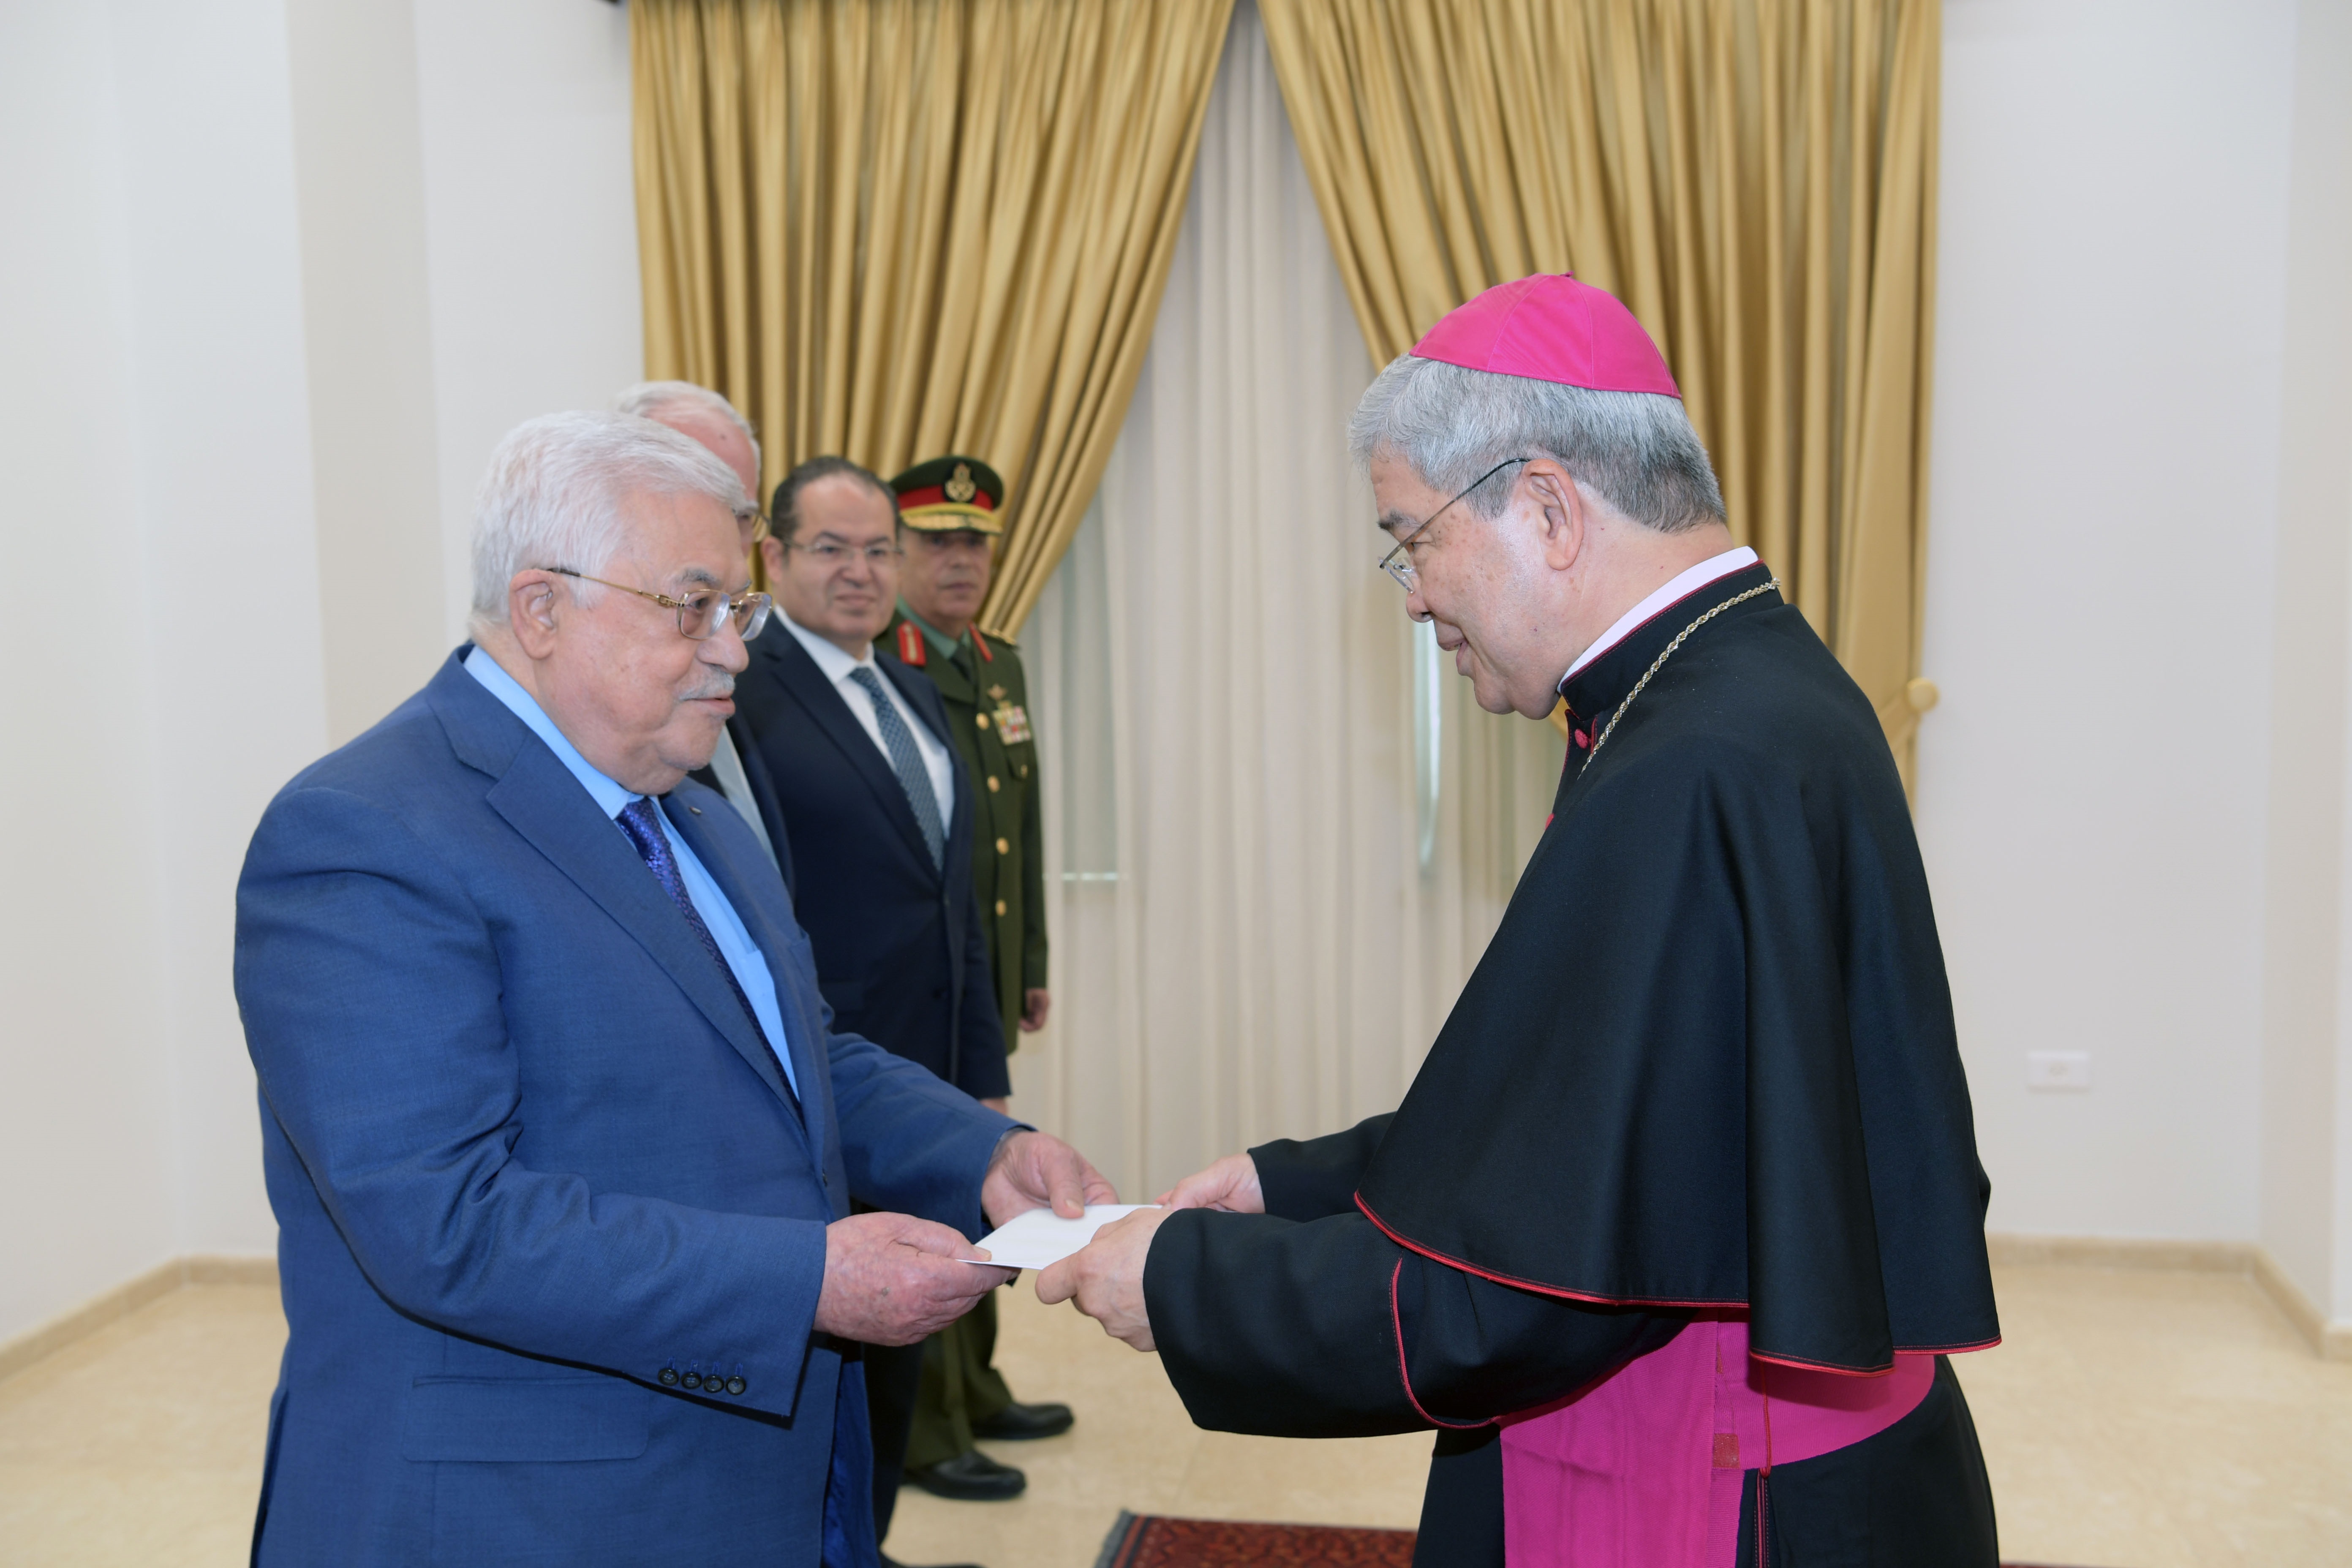 الرئيس يتقبل أوراق اعتماد القاصد الرسولي ممثل الفاتيكان لدى دولة فلسطين